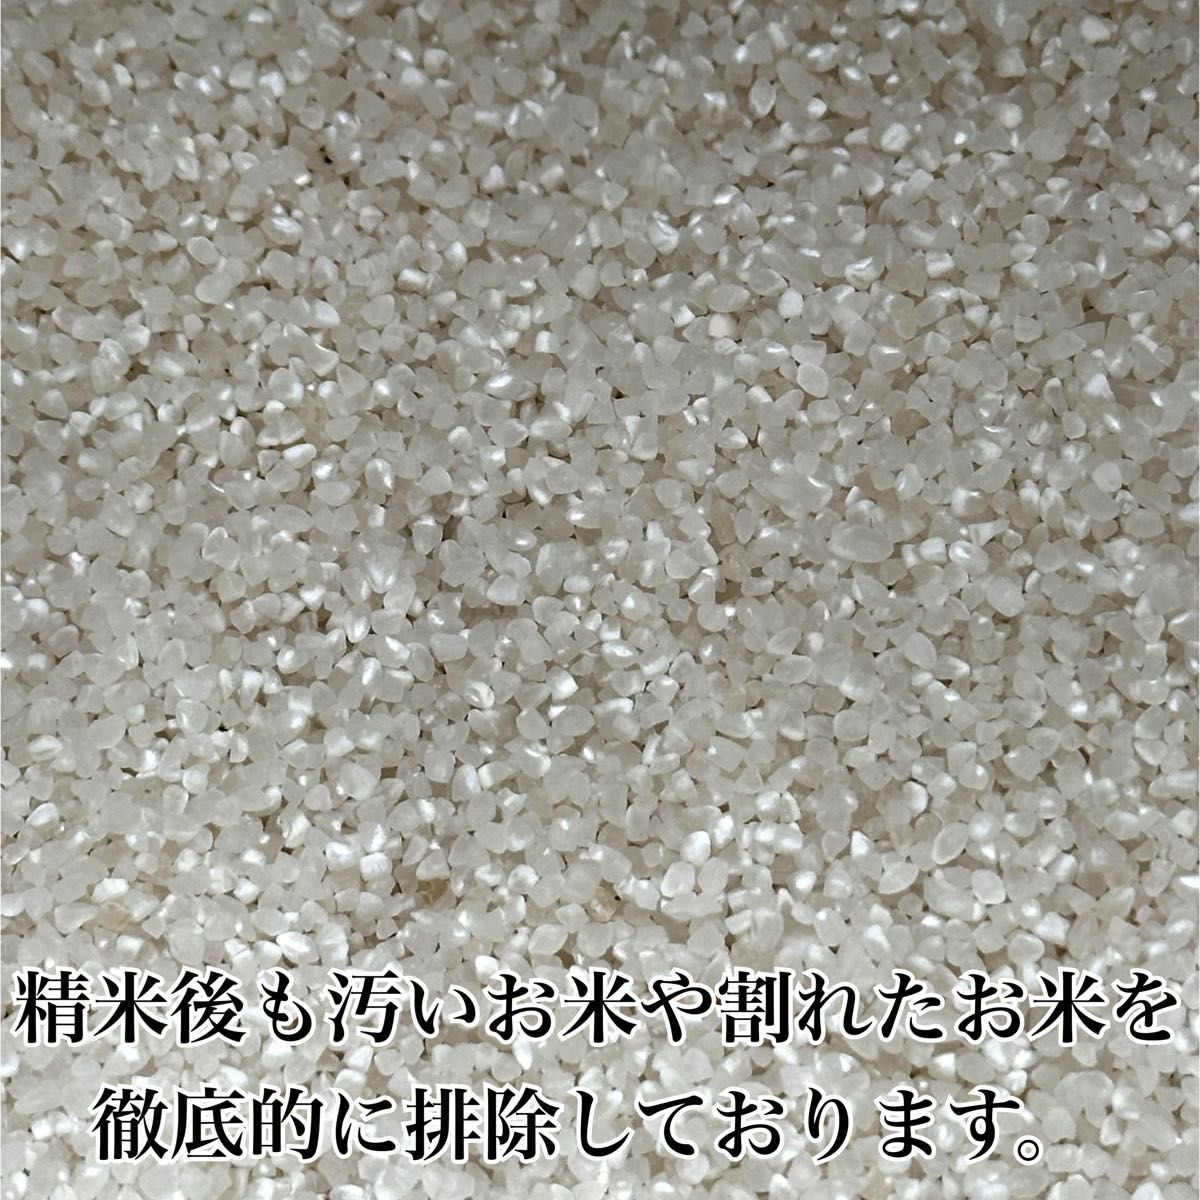 農家直送 秋田県産 令和5年 あきたこまち 20kg 特別栽培米 秋田小町 無洗米も対応